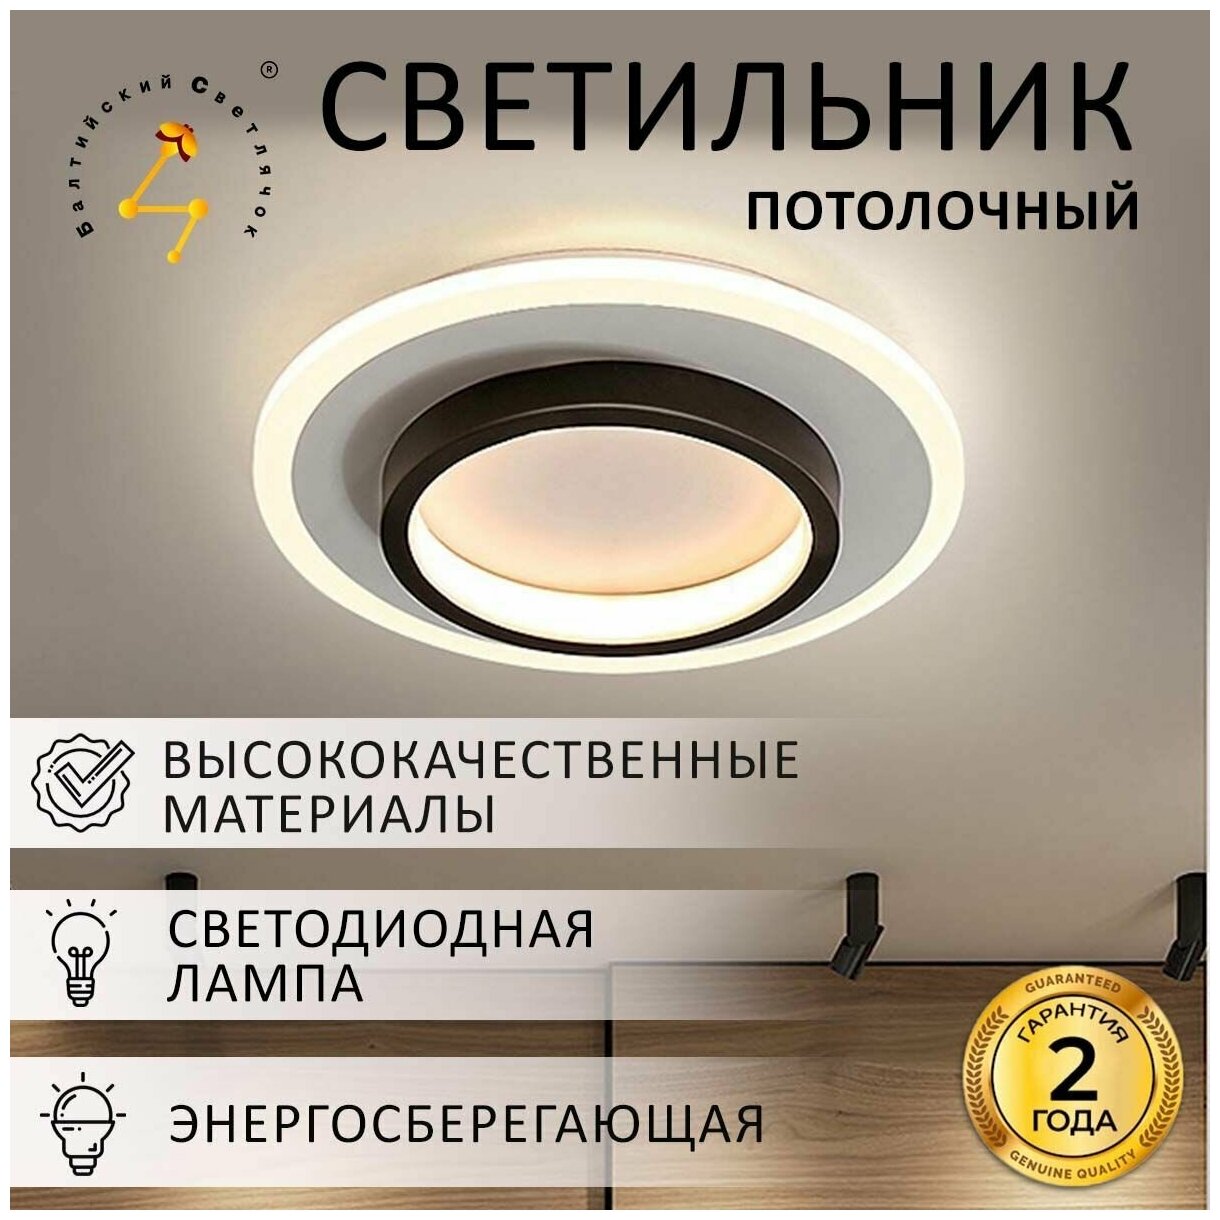 Светильник потолочный светодиодный Балтийский Светлячок LED 23 Вт, тёплый свет